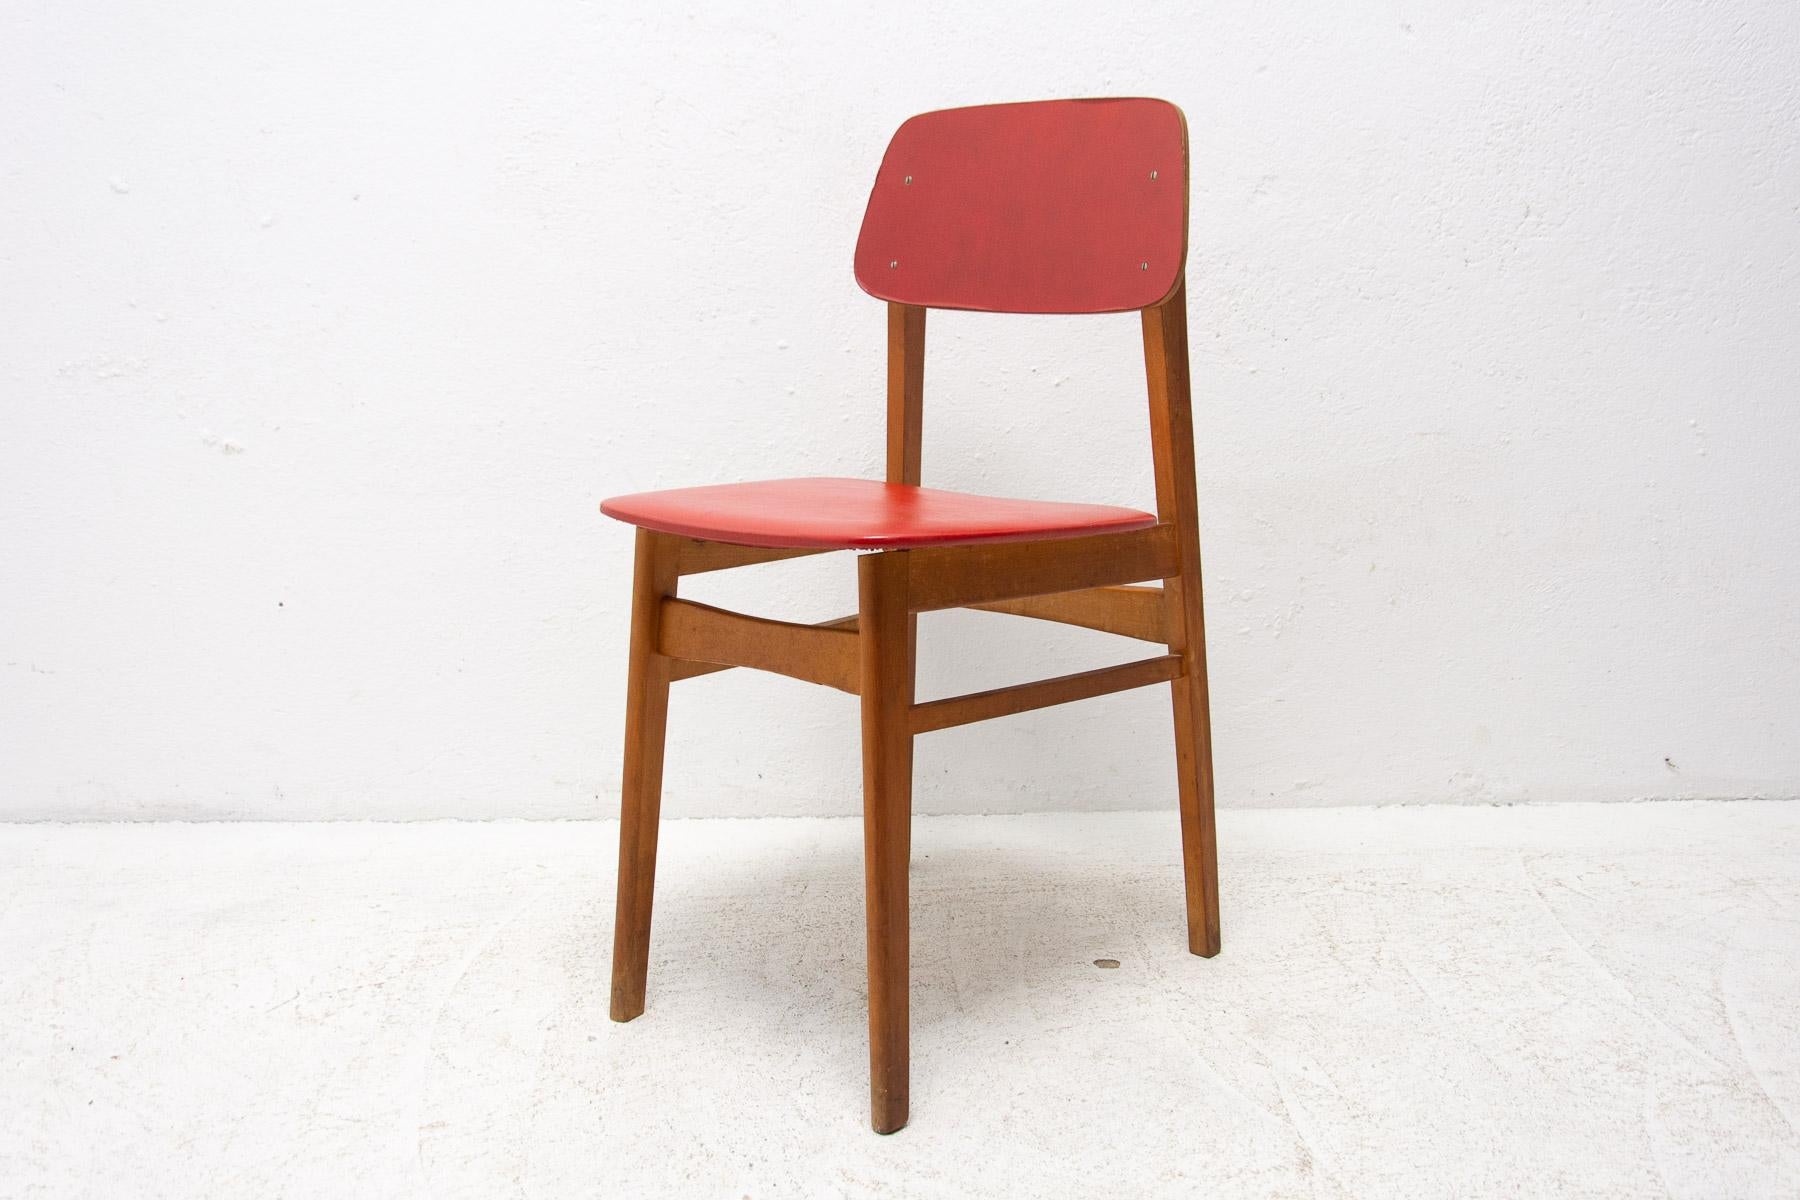 Dieser Stuhl aus der Mitte des Jahrhunderts wurde in der ehemaligen Tschechoslowakei hergestellt, die mit der Brüsseler Zeit nach der EXPO 58 in Verbindung gebracht wird. Material: Sitz und Rückenlehne aus Kunststoff, Buchenholz. In sehr gutem